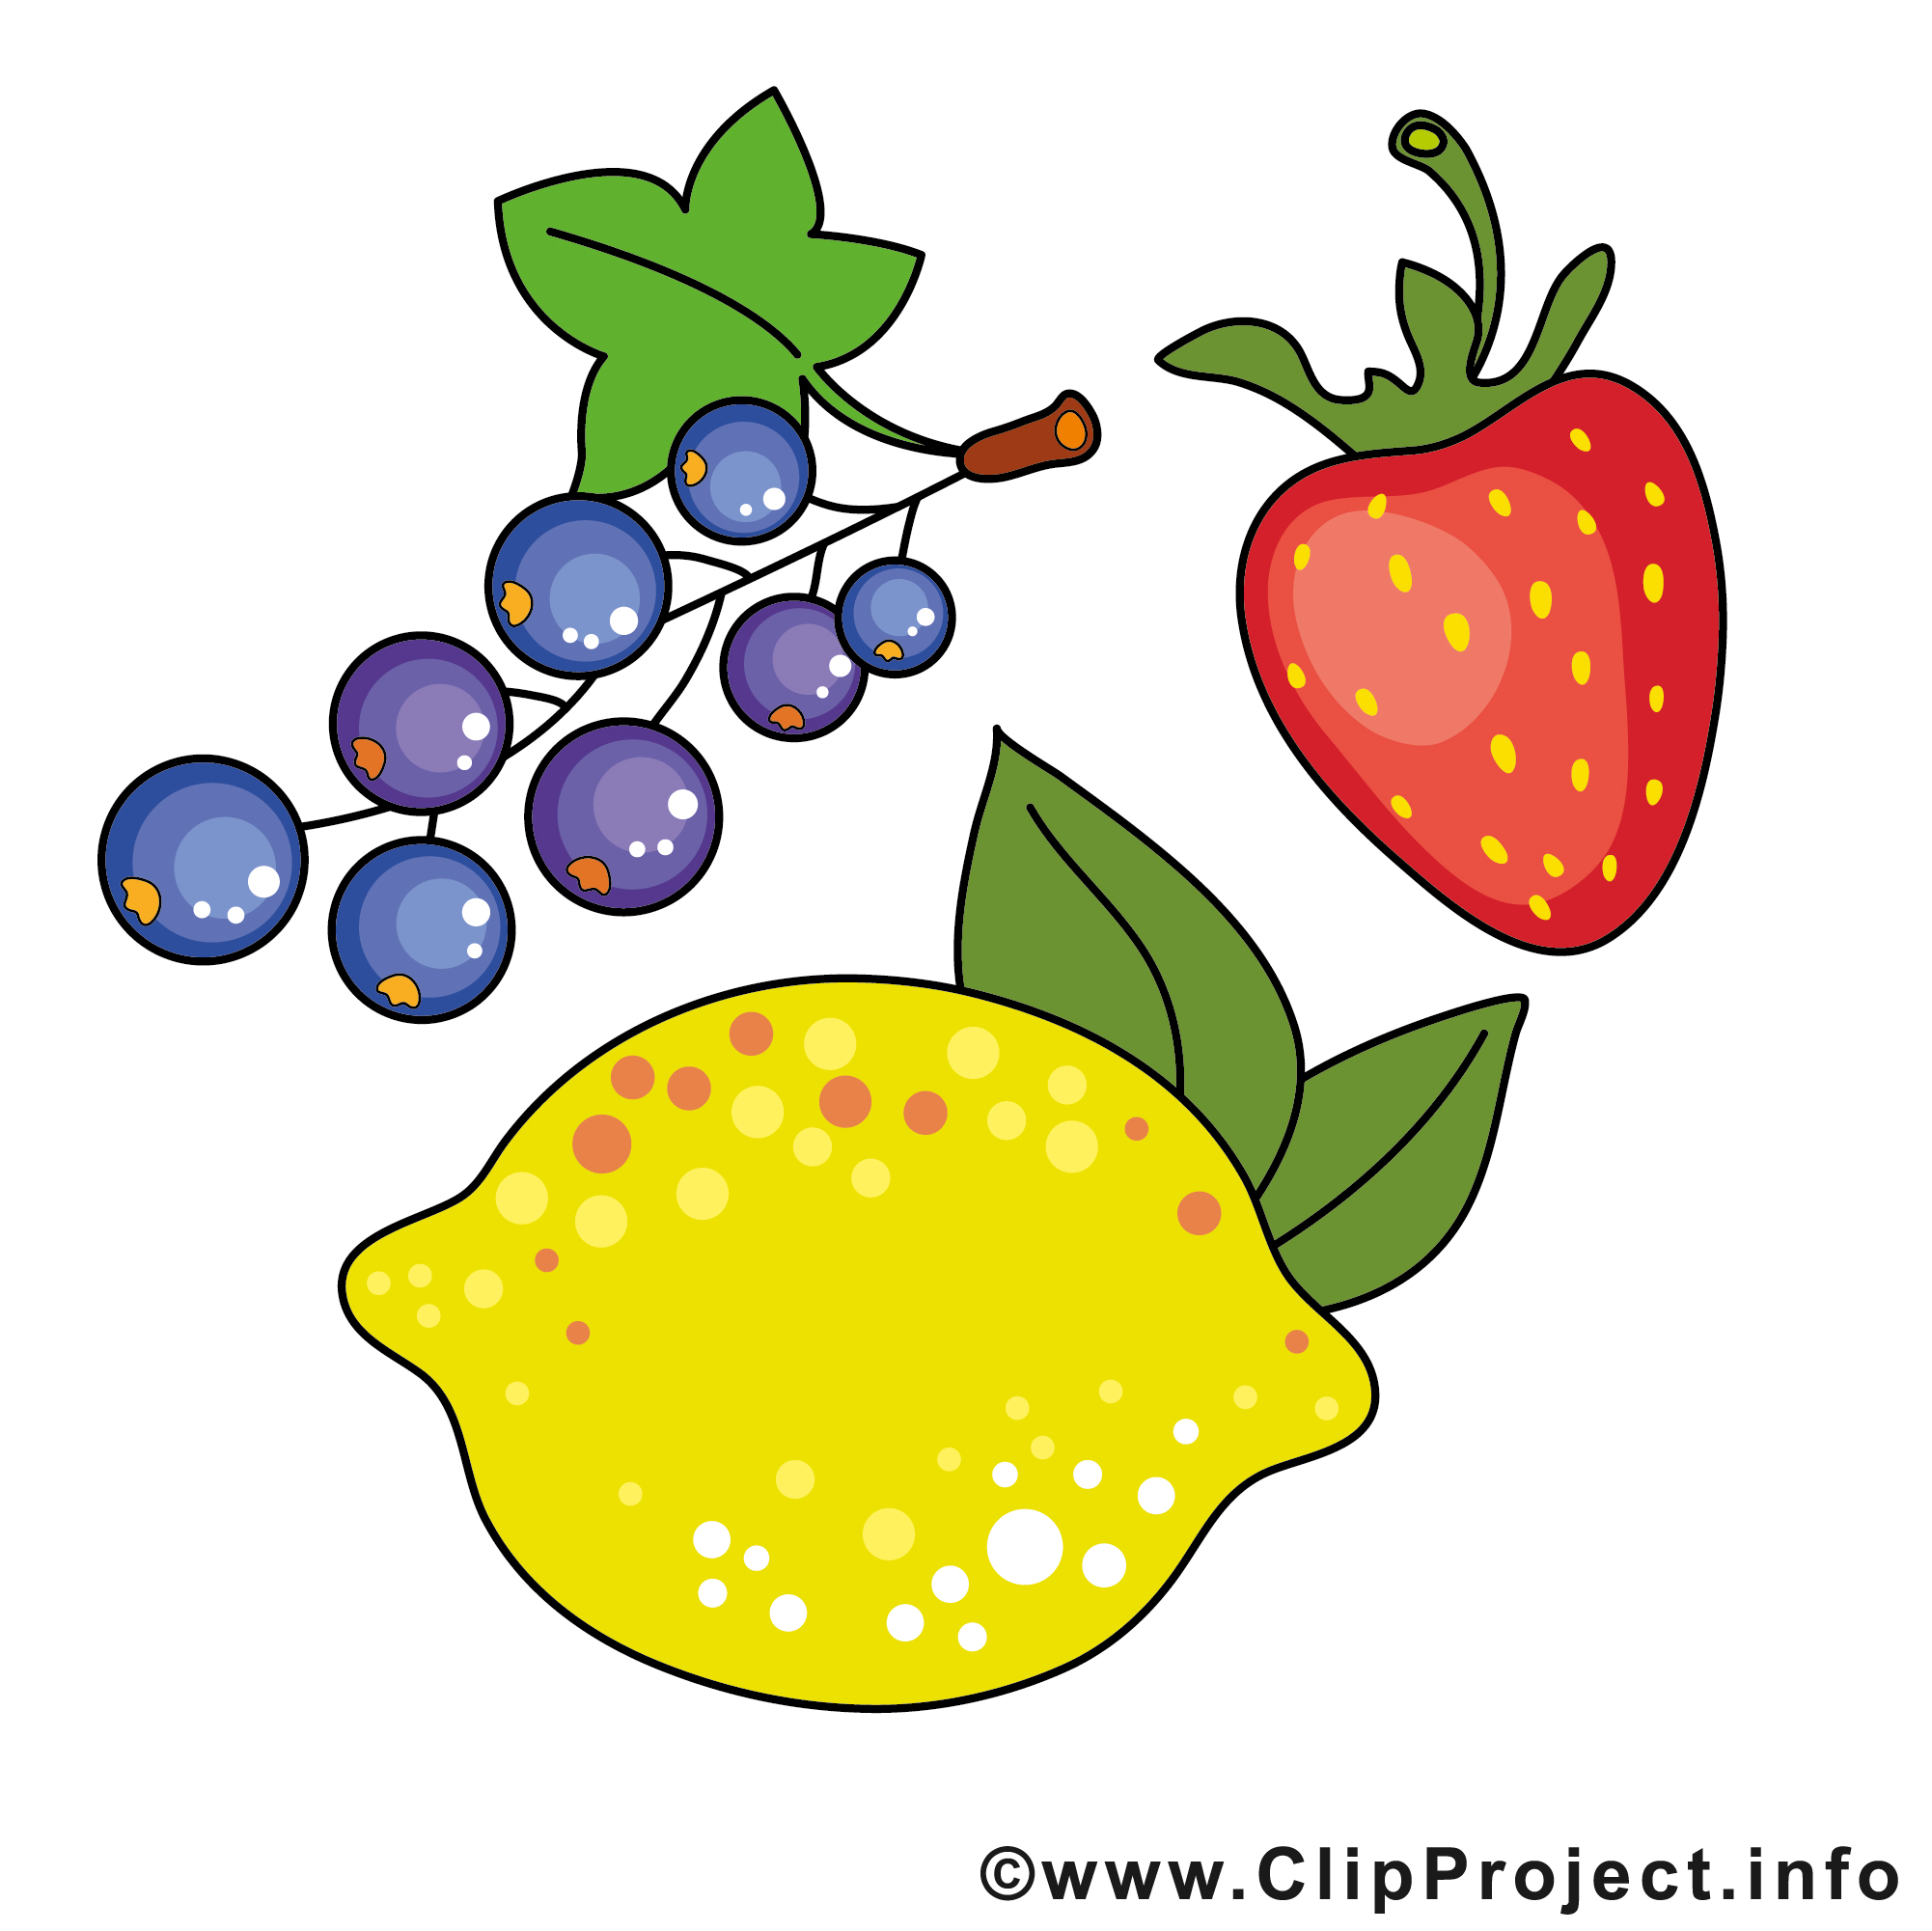 image clipart gratuit fruits - photo #29